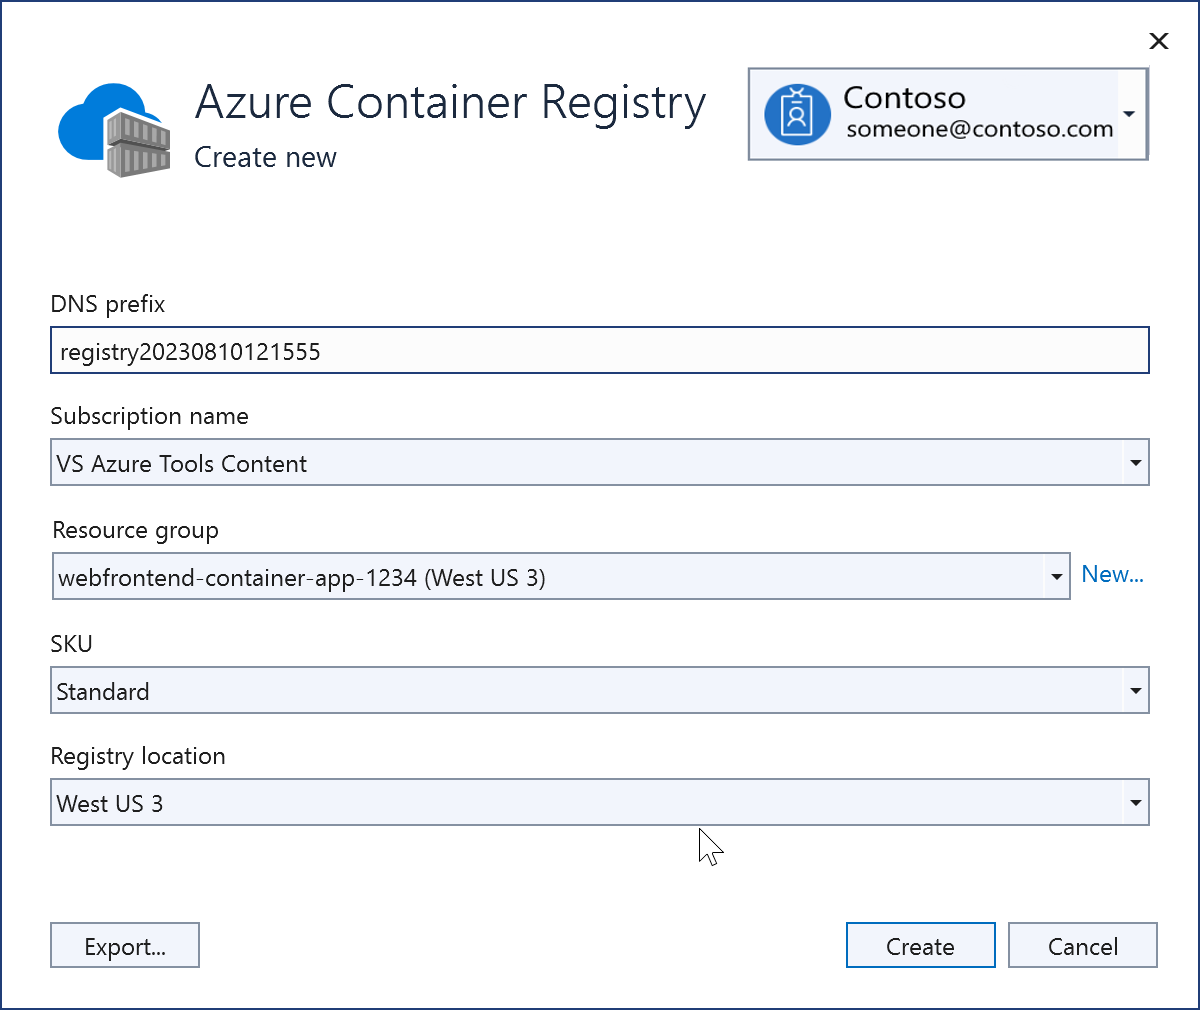 Captura de tela mostrando um novo registro de contêiner do Azure que acabou de ser criado.